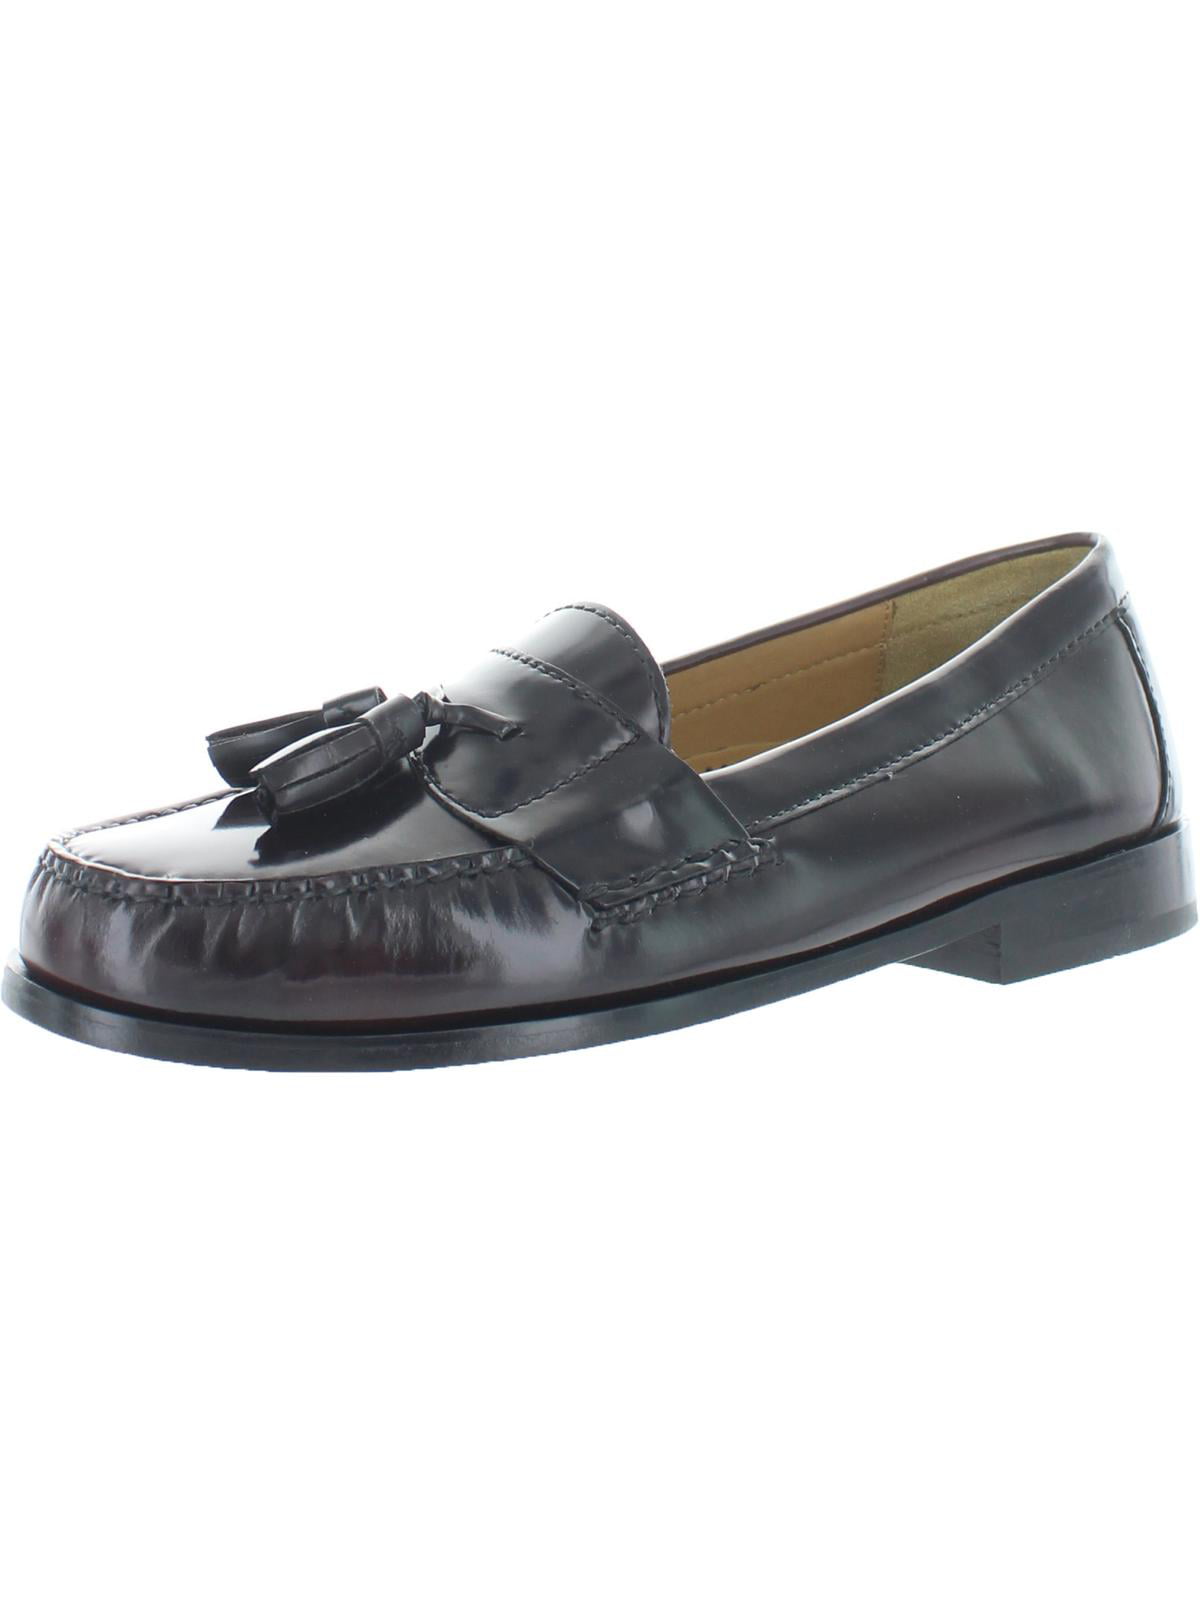 Men Cole Haan Pinch Tassel Moccasins Slip On Loafer Shoes Leather Burgundy 03507